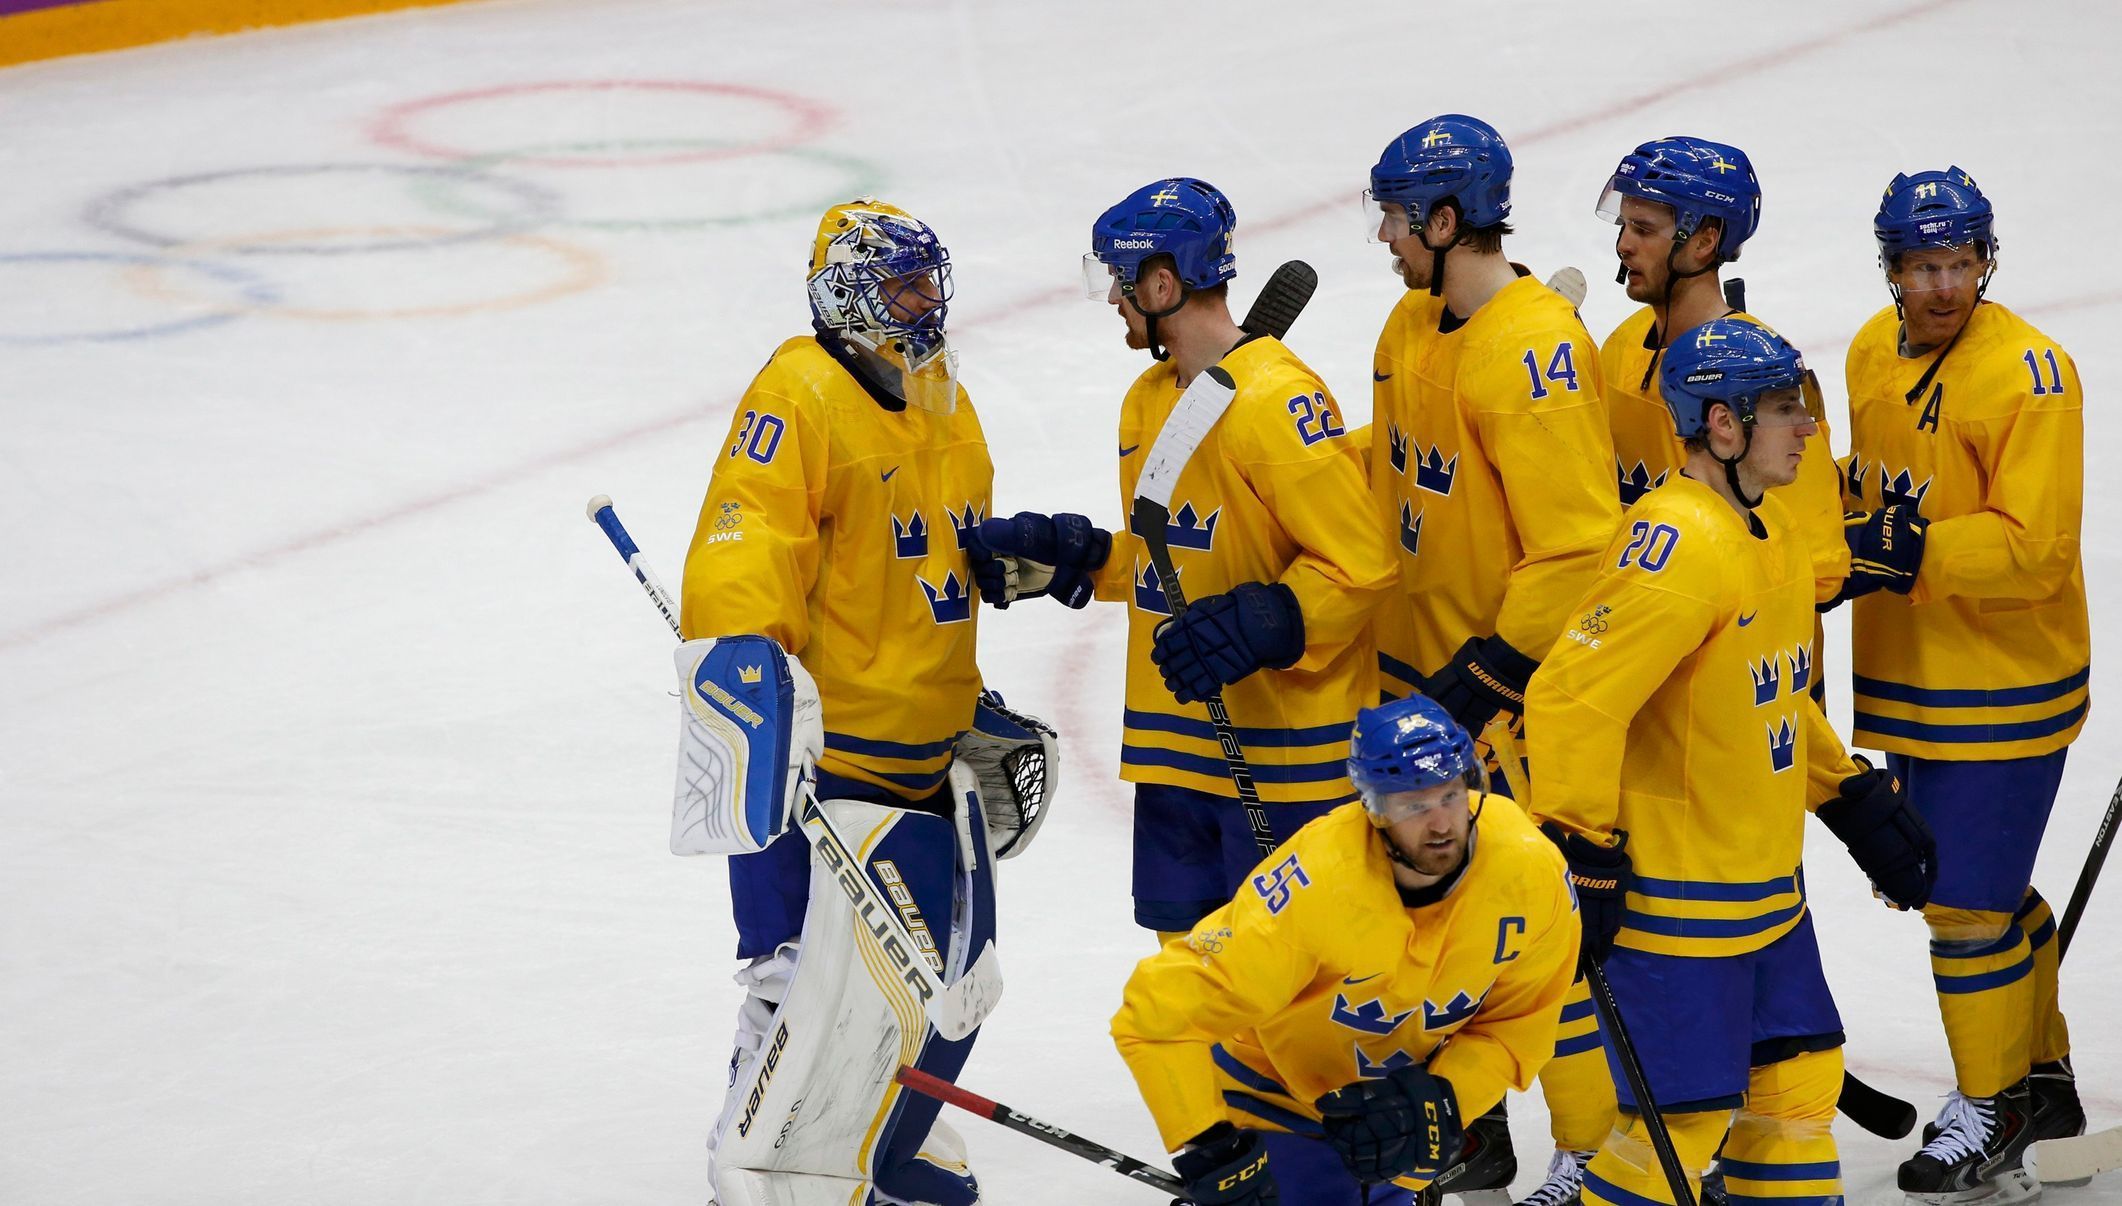 Soči 2014: Švédsko - Slovinsko (hokej, muži, čtvrtfinále 1)